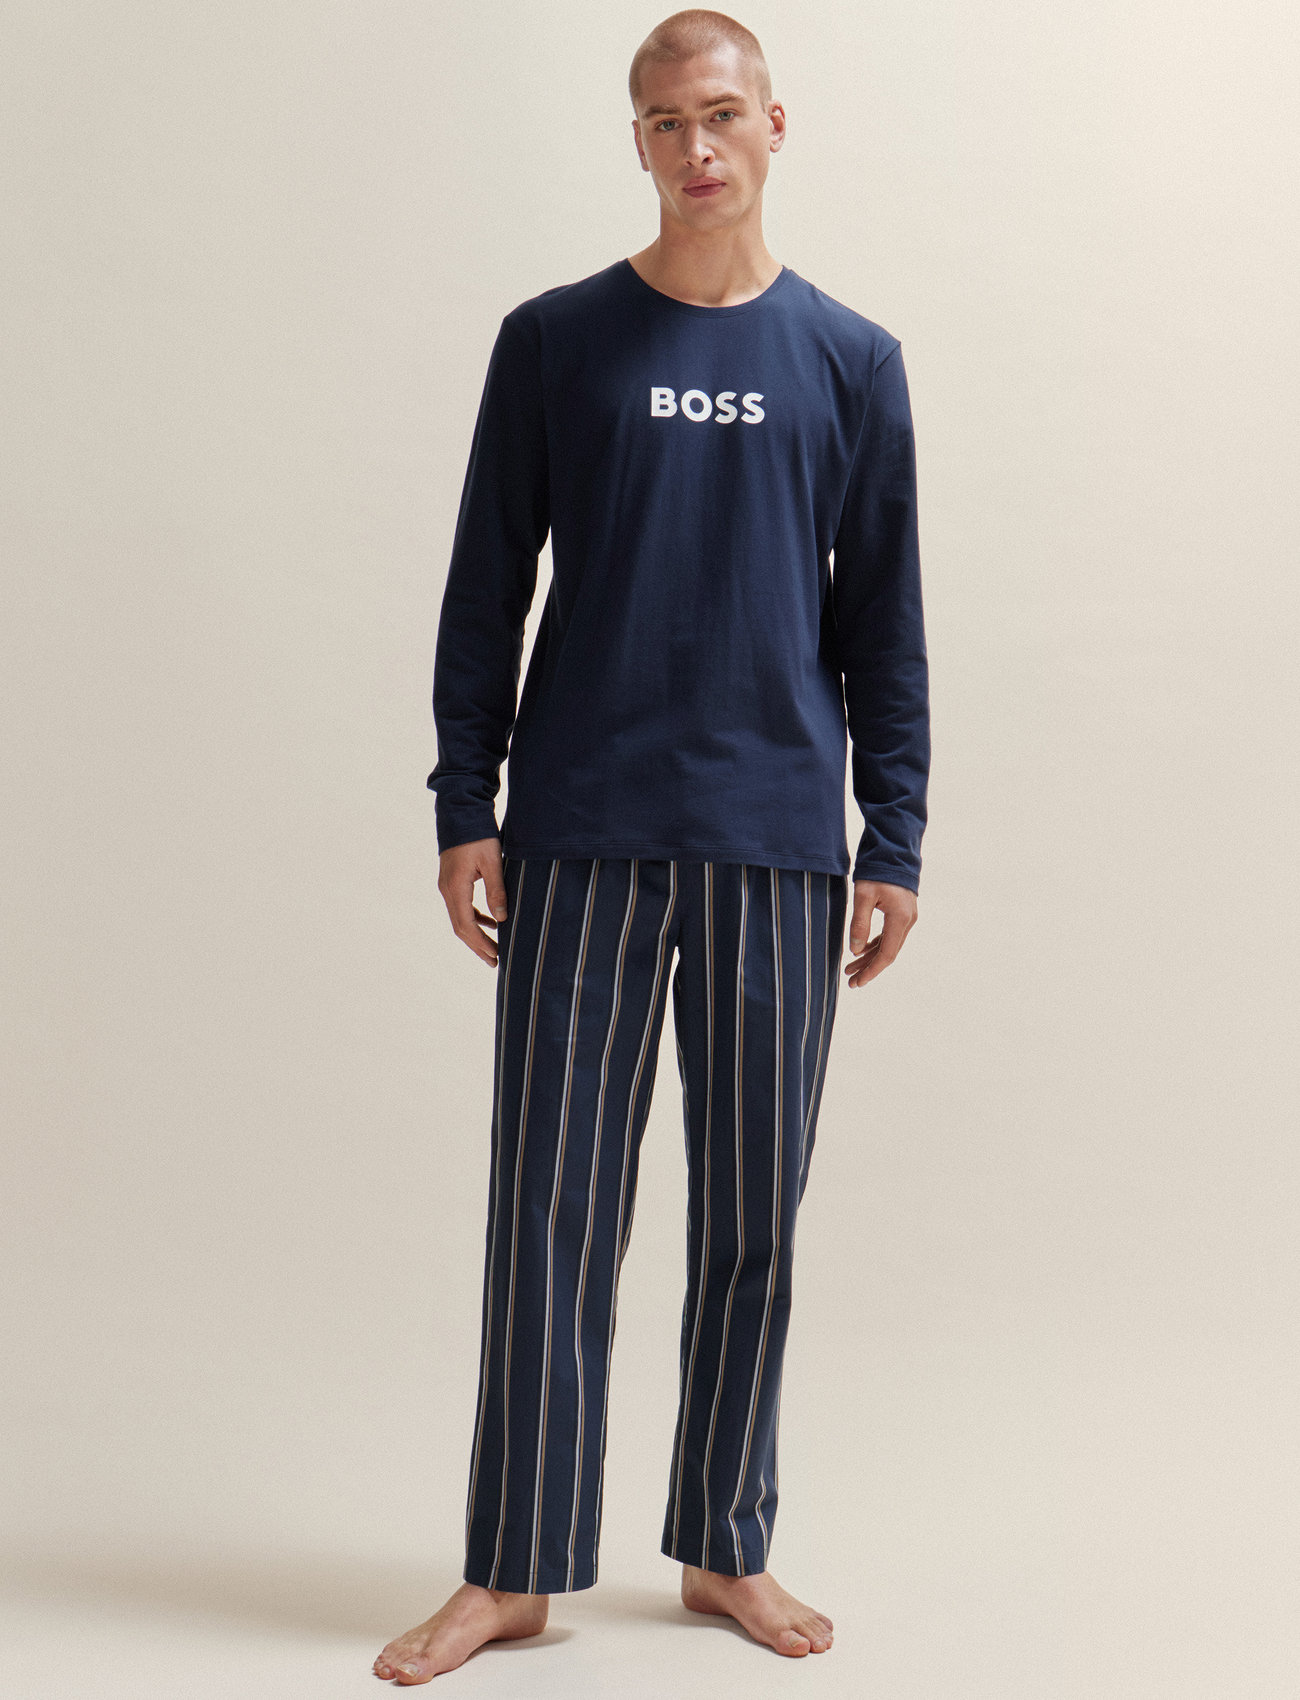 BOSS - Easy Long Set - zestaw piżamowy - open blue - 1